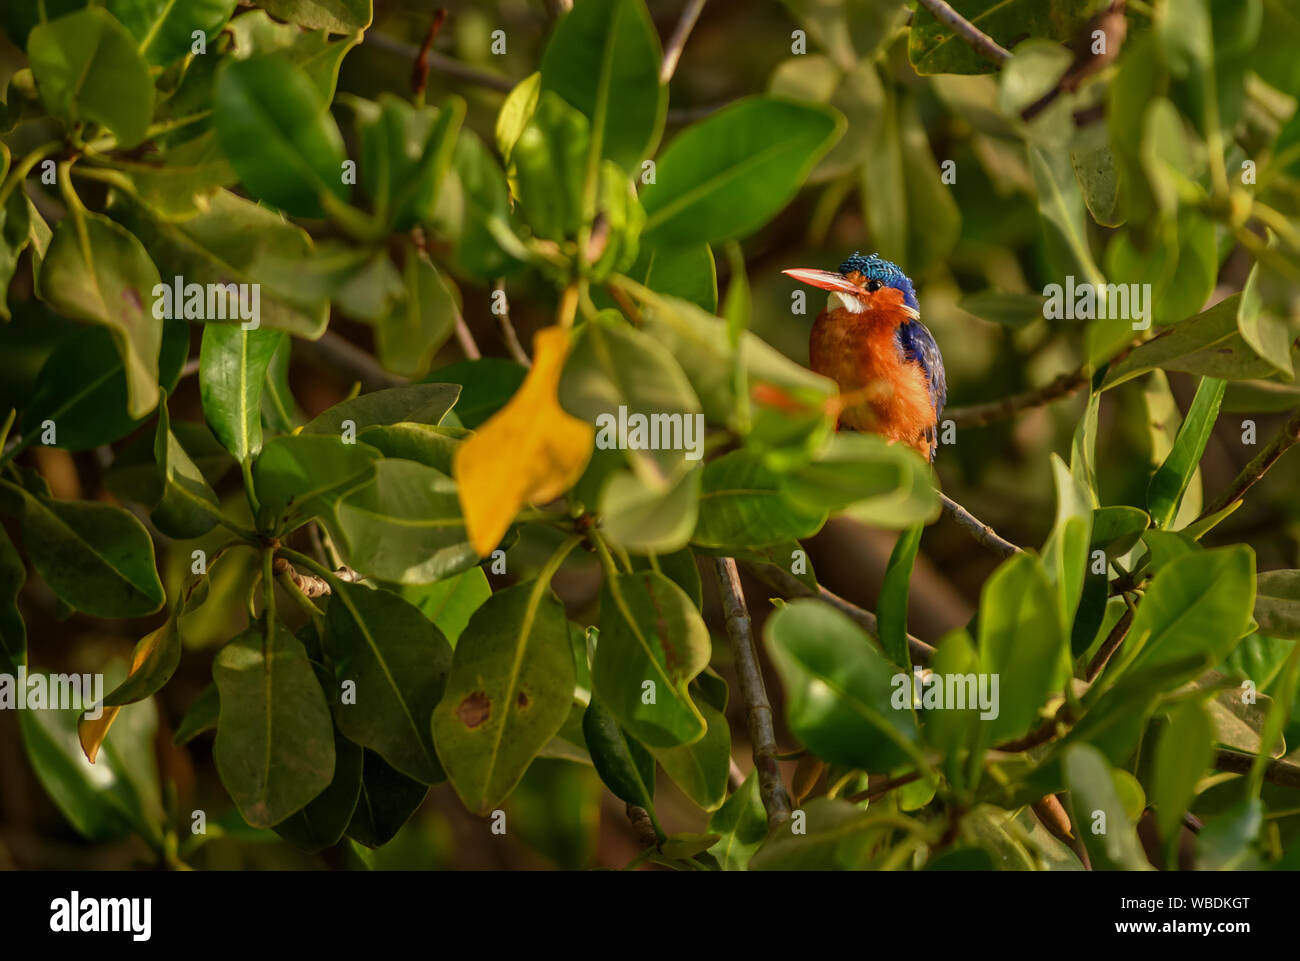 Malaquita Martín Pescador - Alcedo cristata, hermoso pequeño río azul y naranja kingfisher del oeste africano de ríos y manglares, La someone, Senegal. Foto de stock